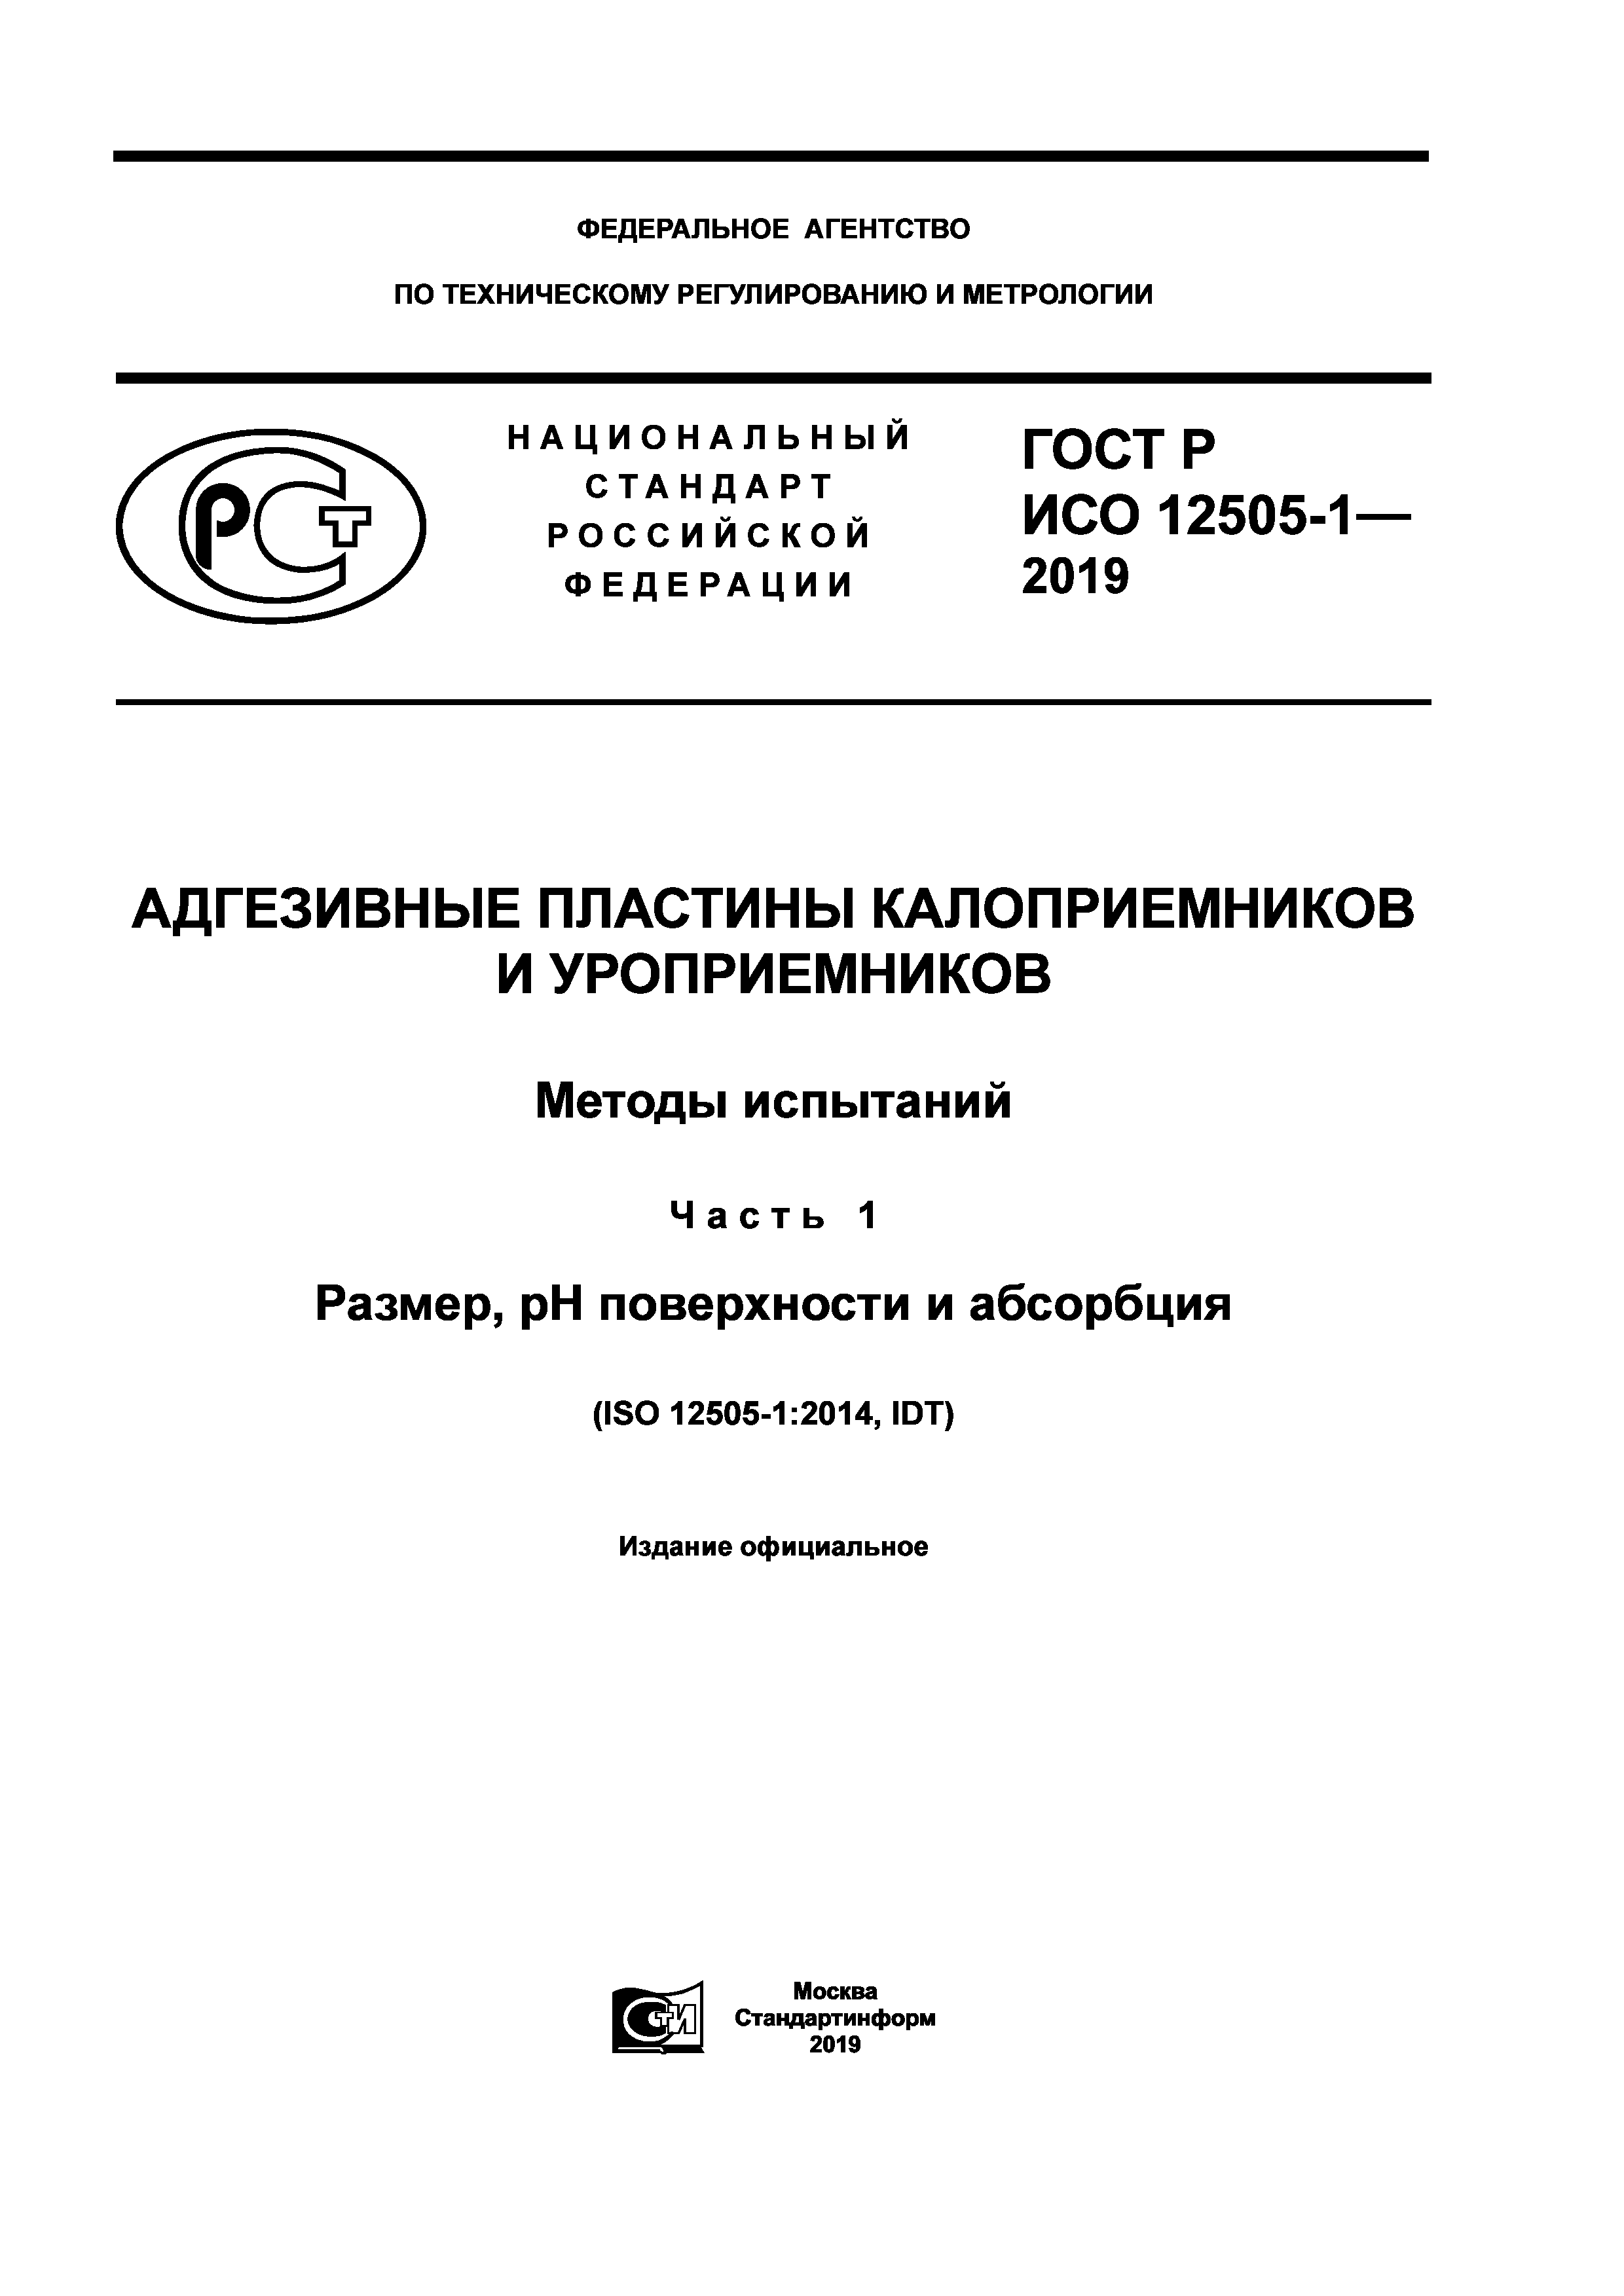 ГОСТ Р ИСО 12505-1-2019